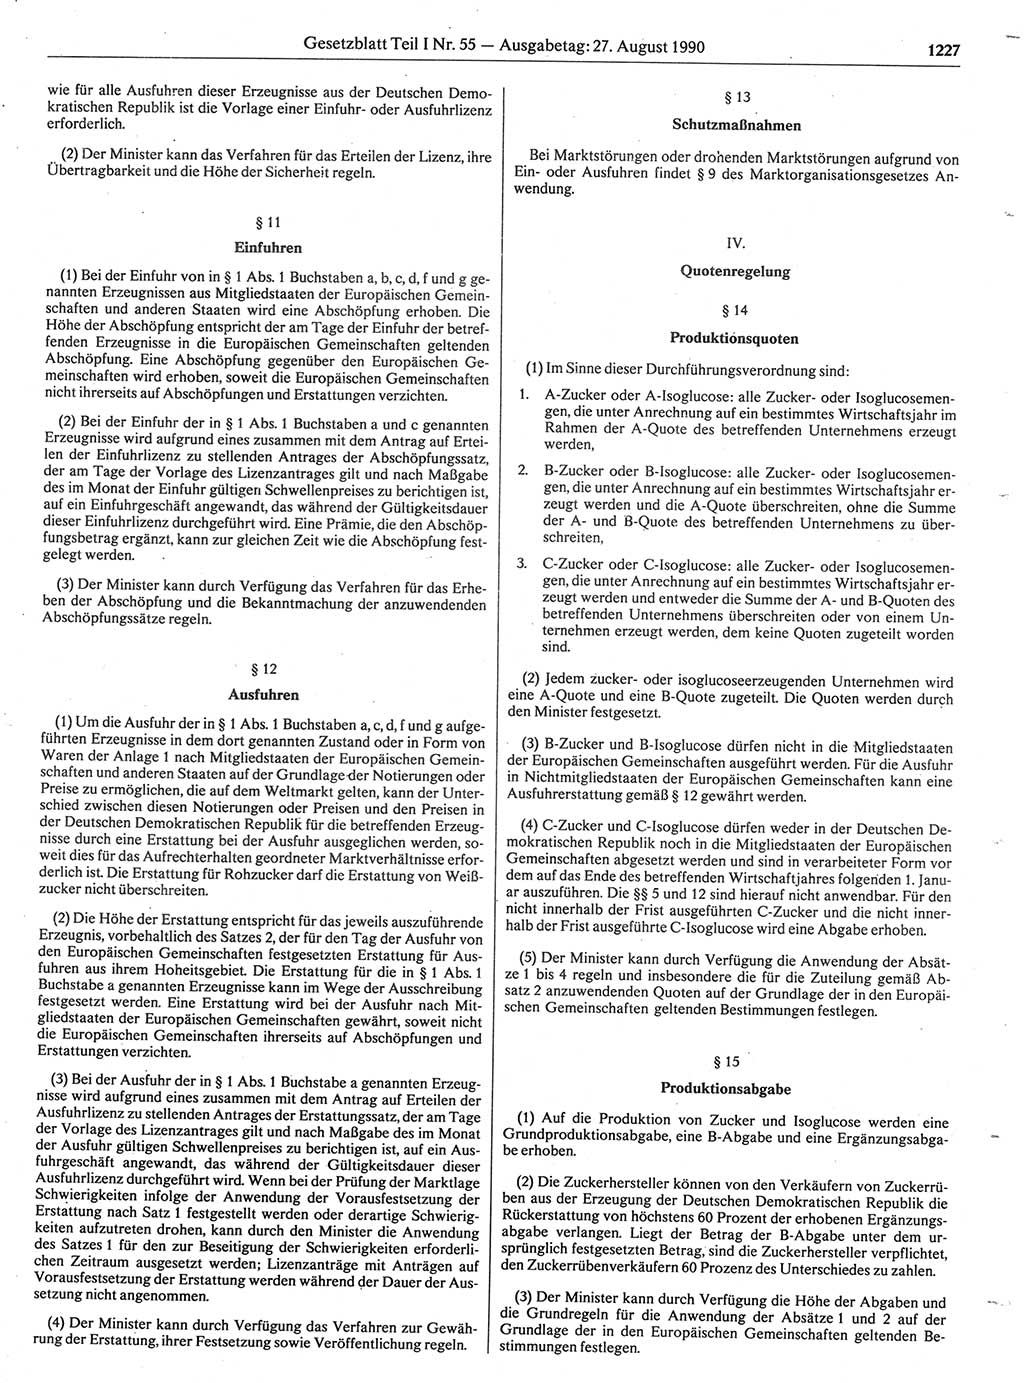 Gesetzblatt (GBl.) der Deutschen Demokratischen Republik (DDR) Teil Ⅰ 1990, Seite 1227 (GBl. DDR Ⅰ 1990, S. 1227)